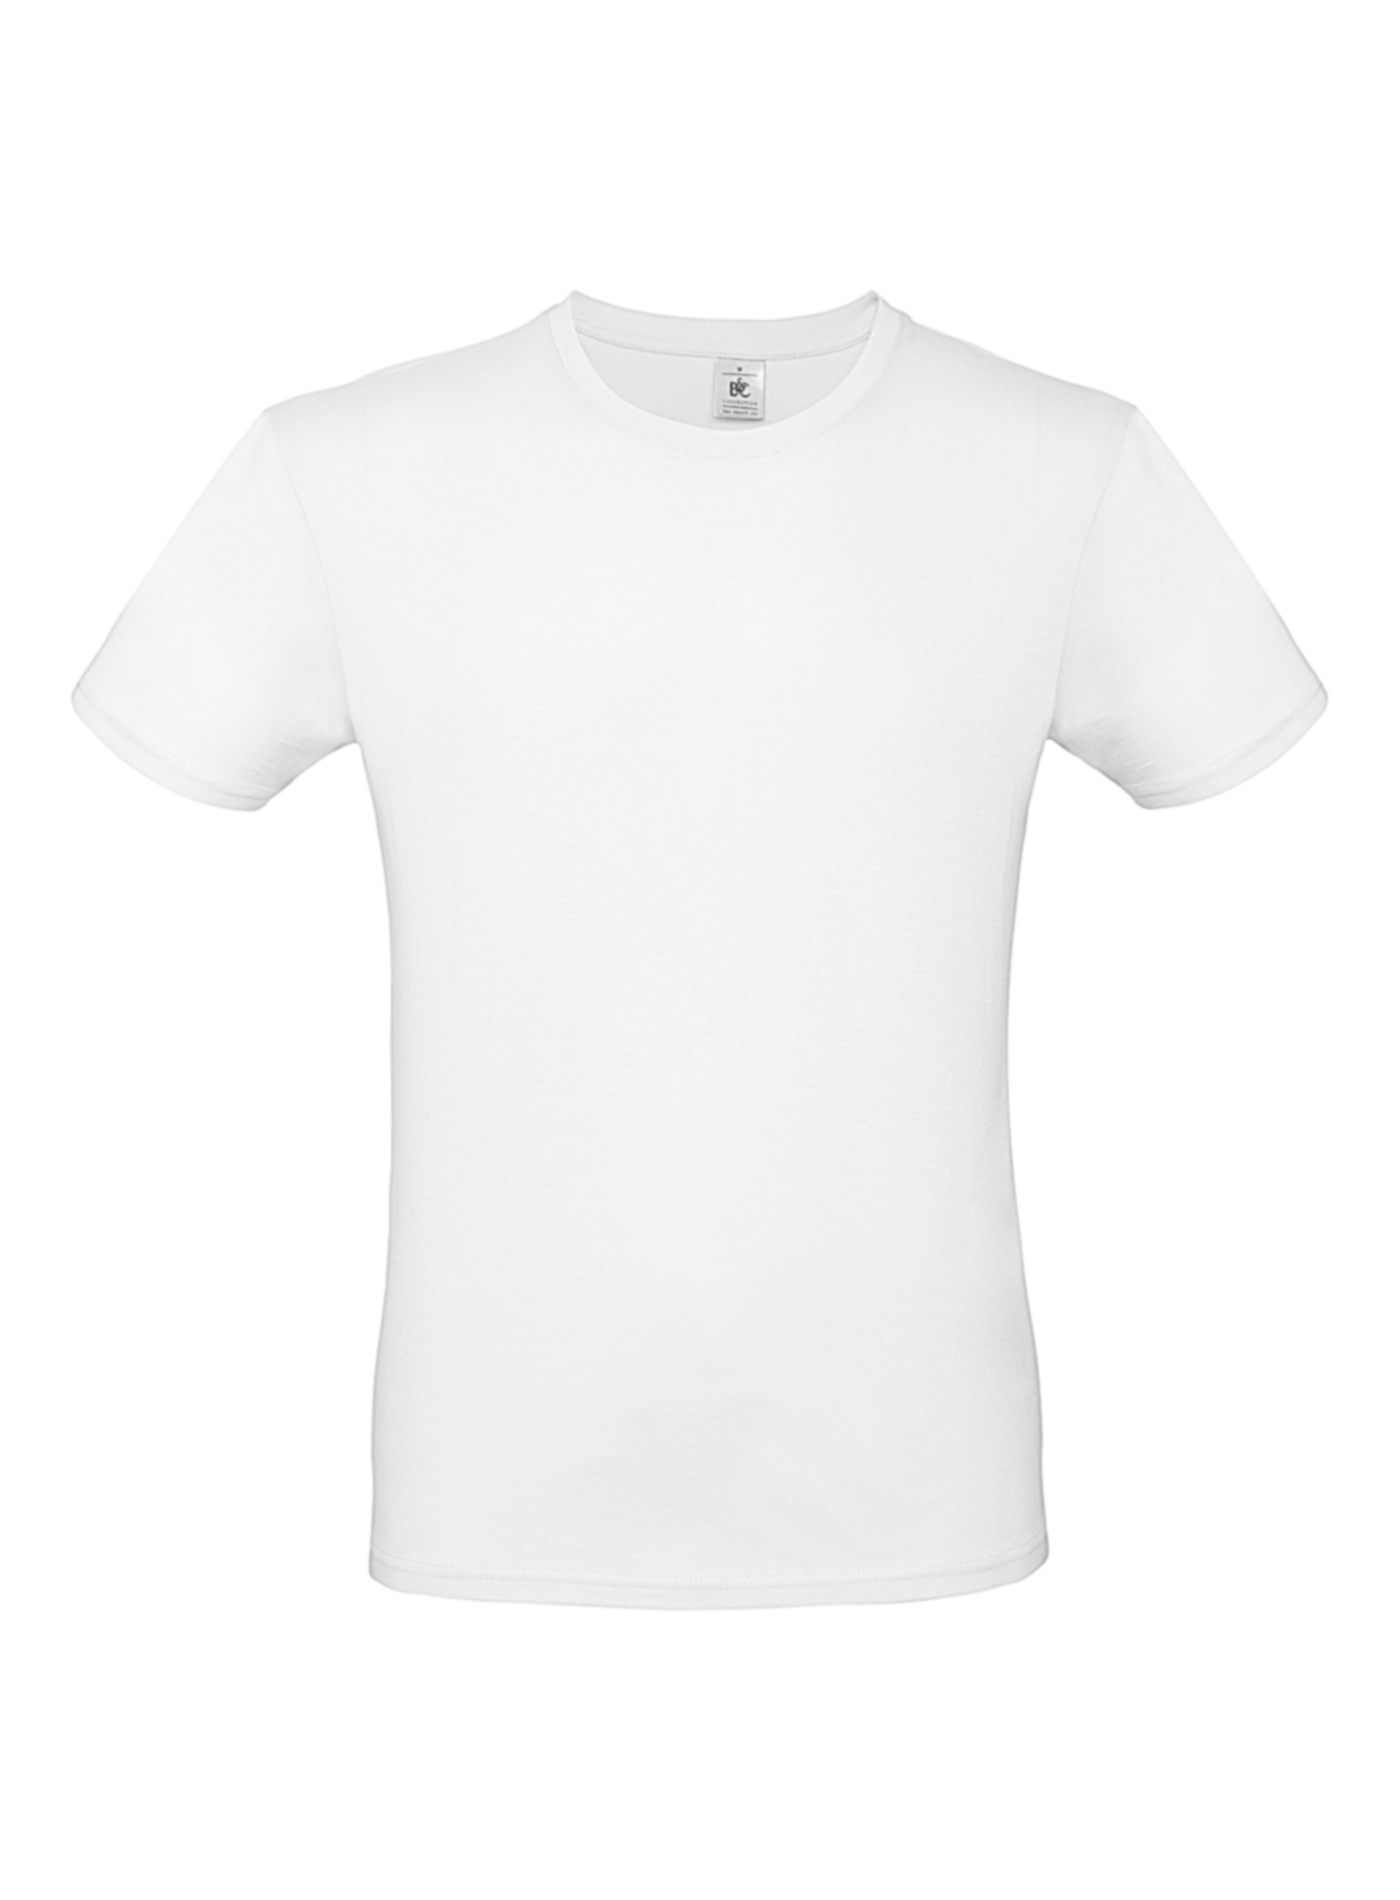 Pánské tričko B&C - Bílá XL